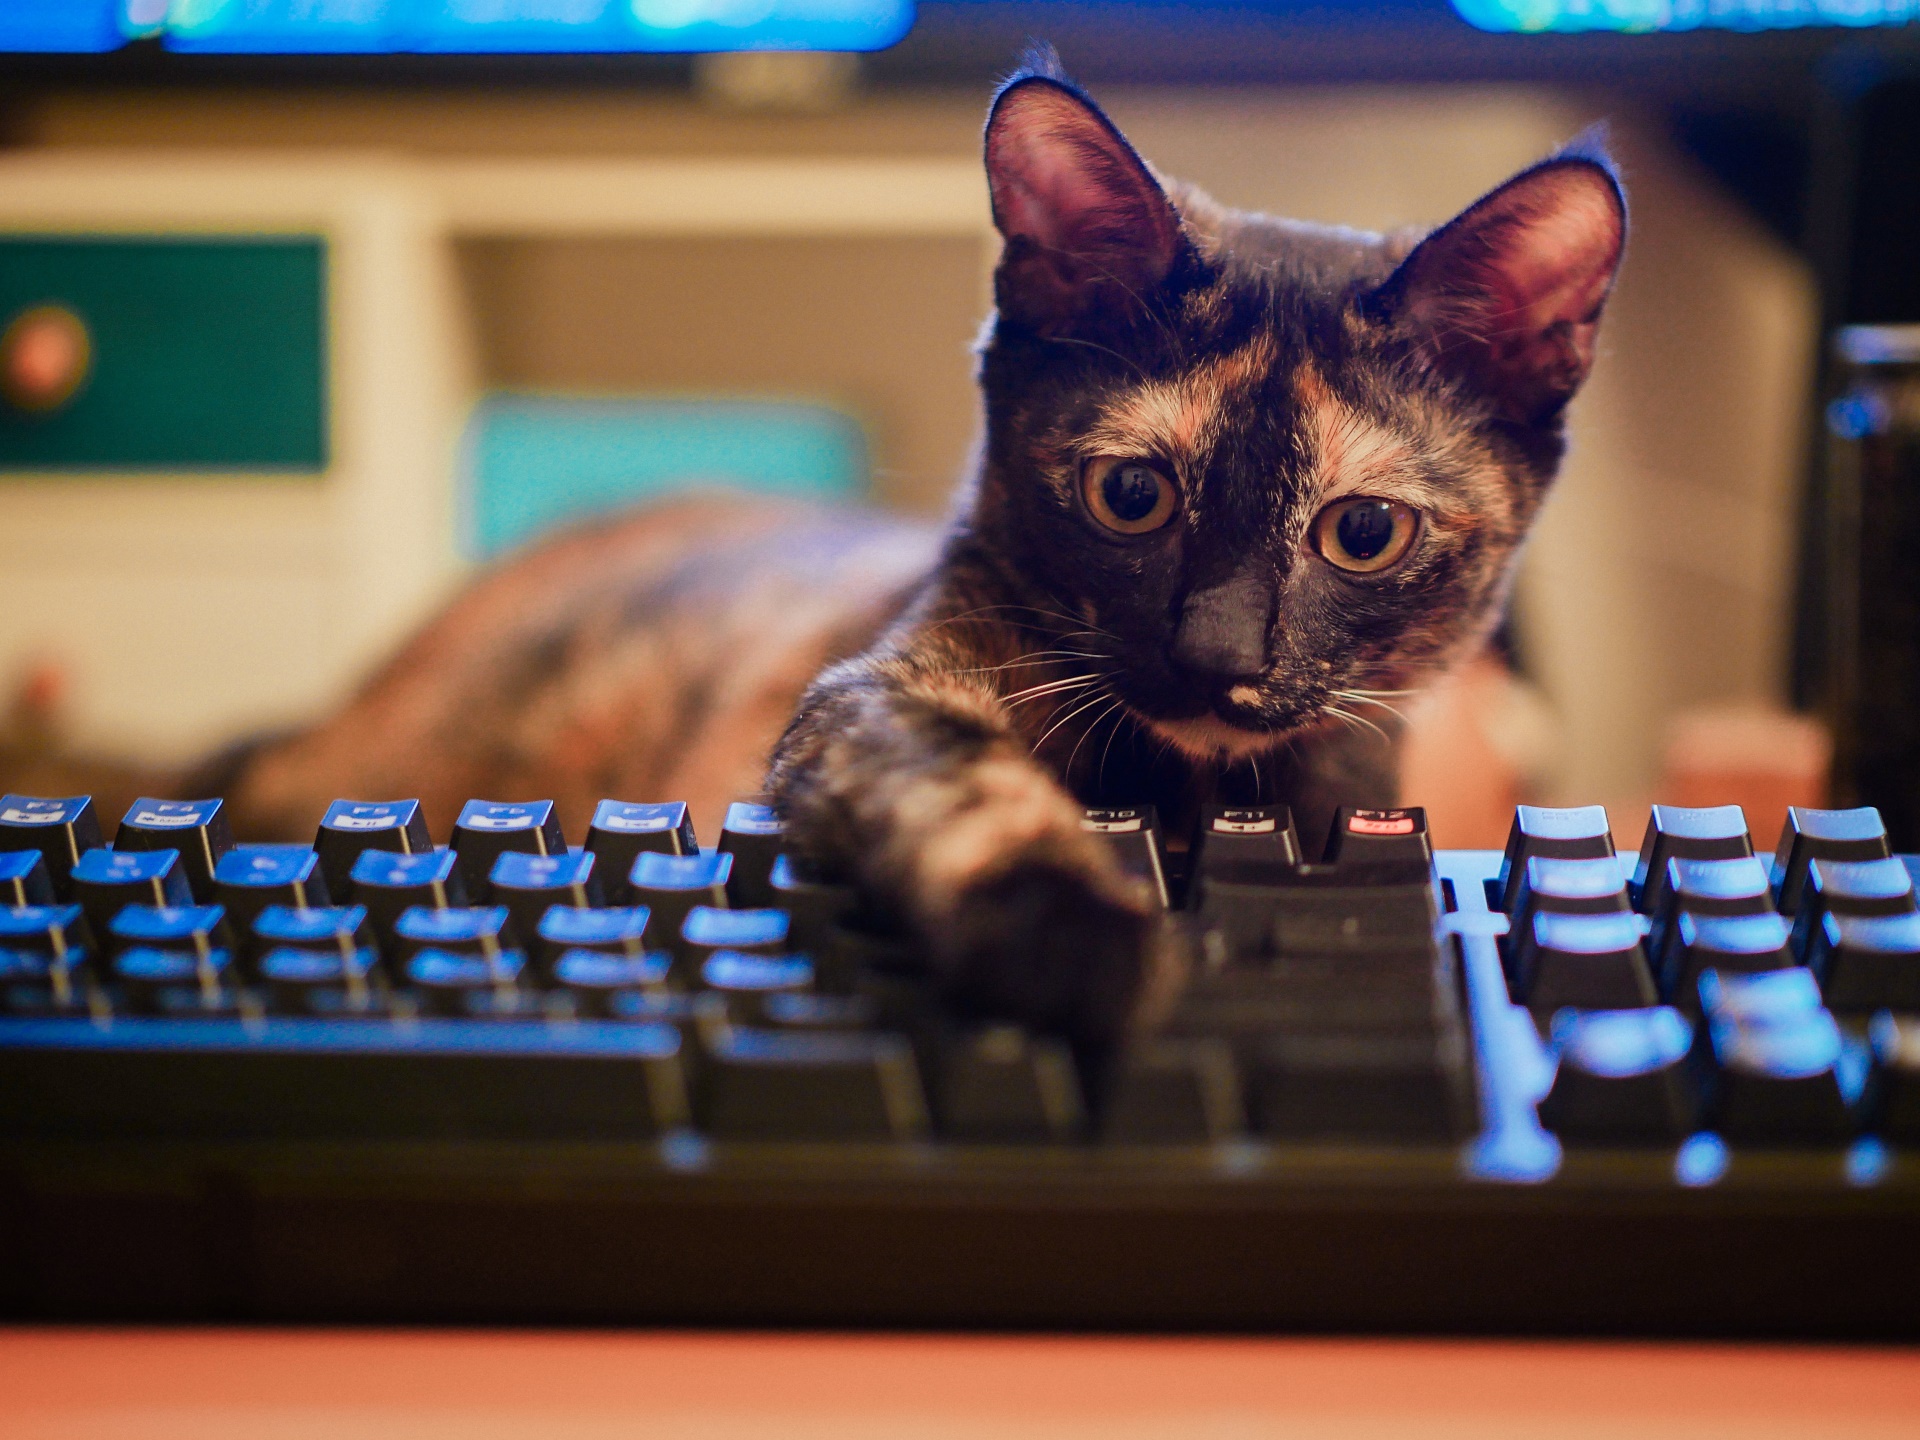 Коты на клавиатуре